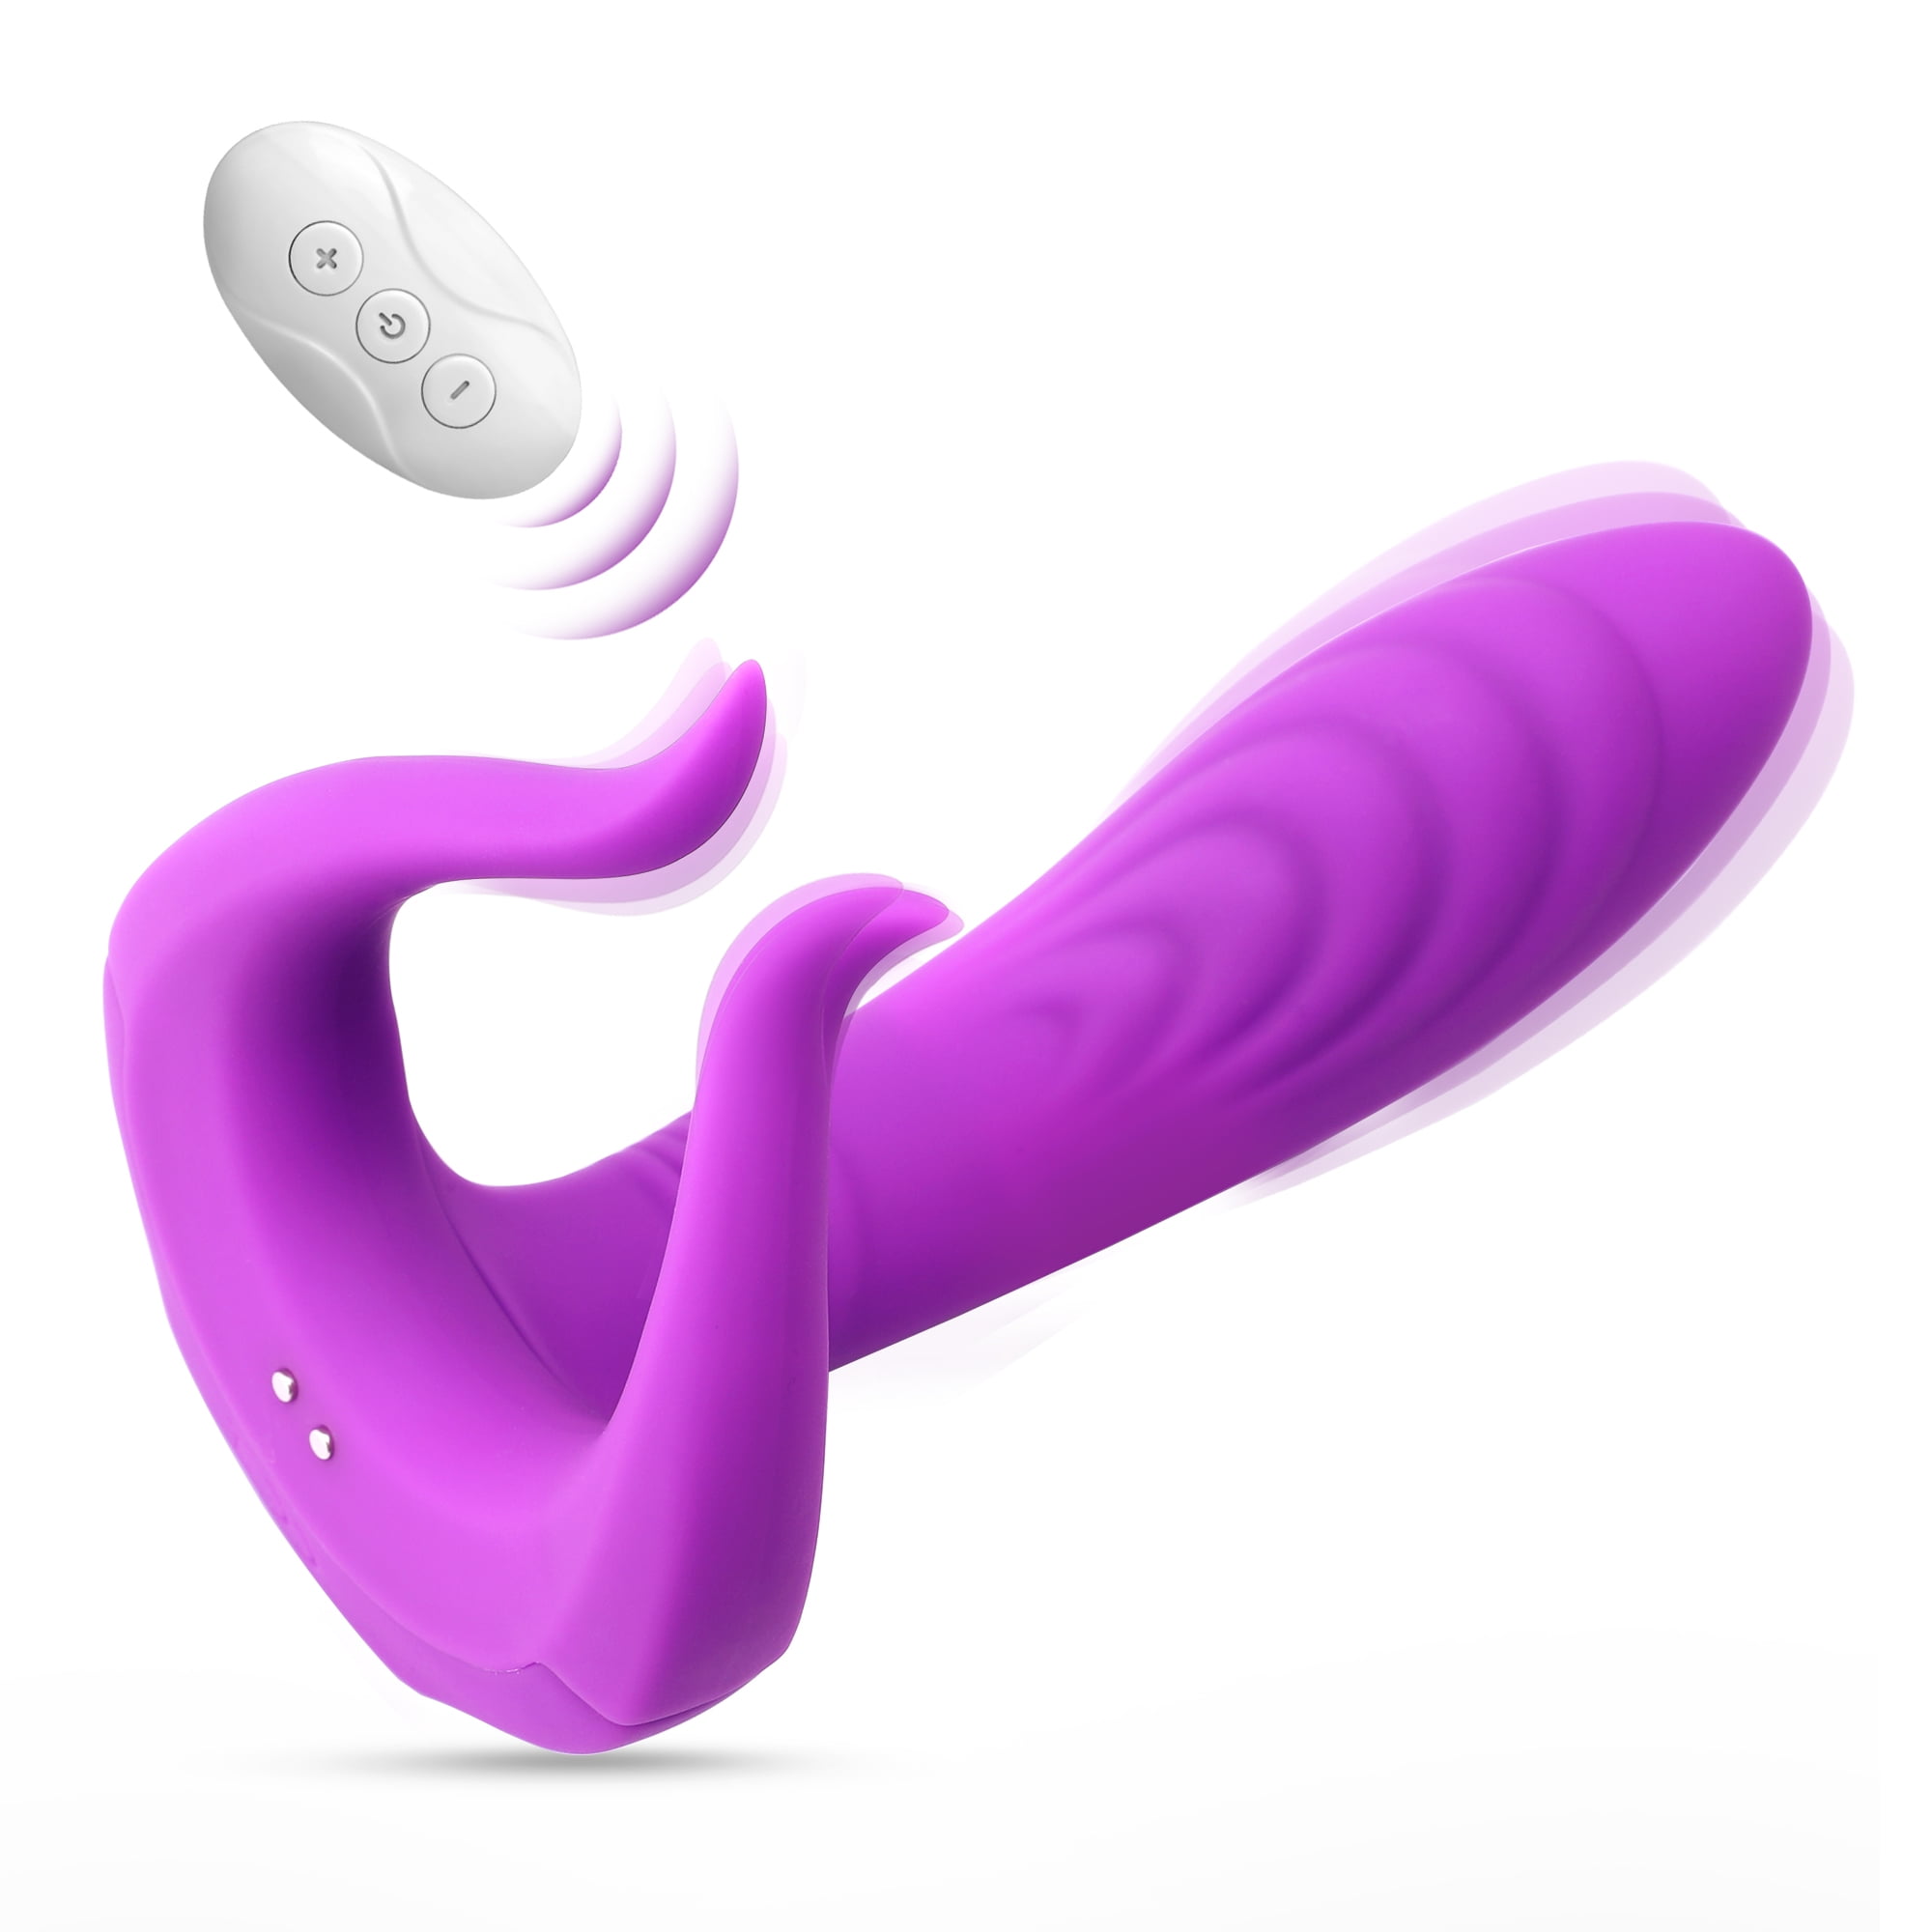 Fidech G Spot Dildo Vibrator With Remote Control 3 In 1 Nipple